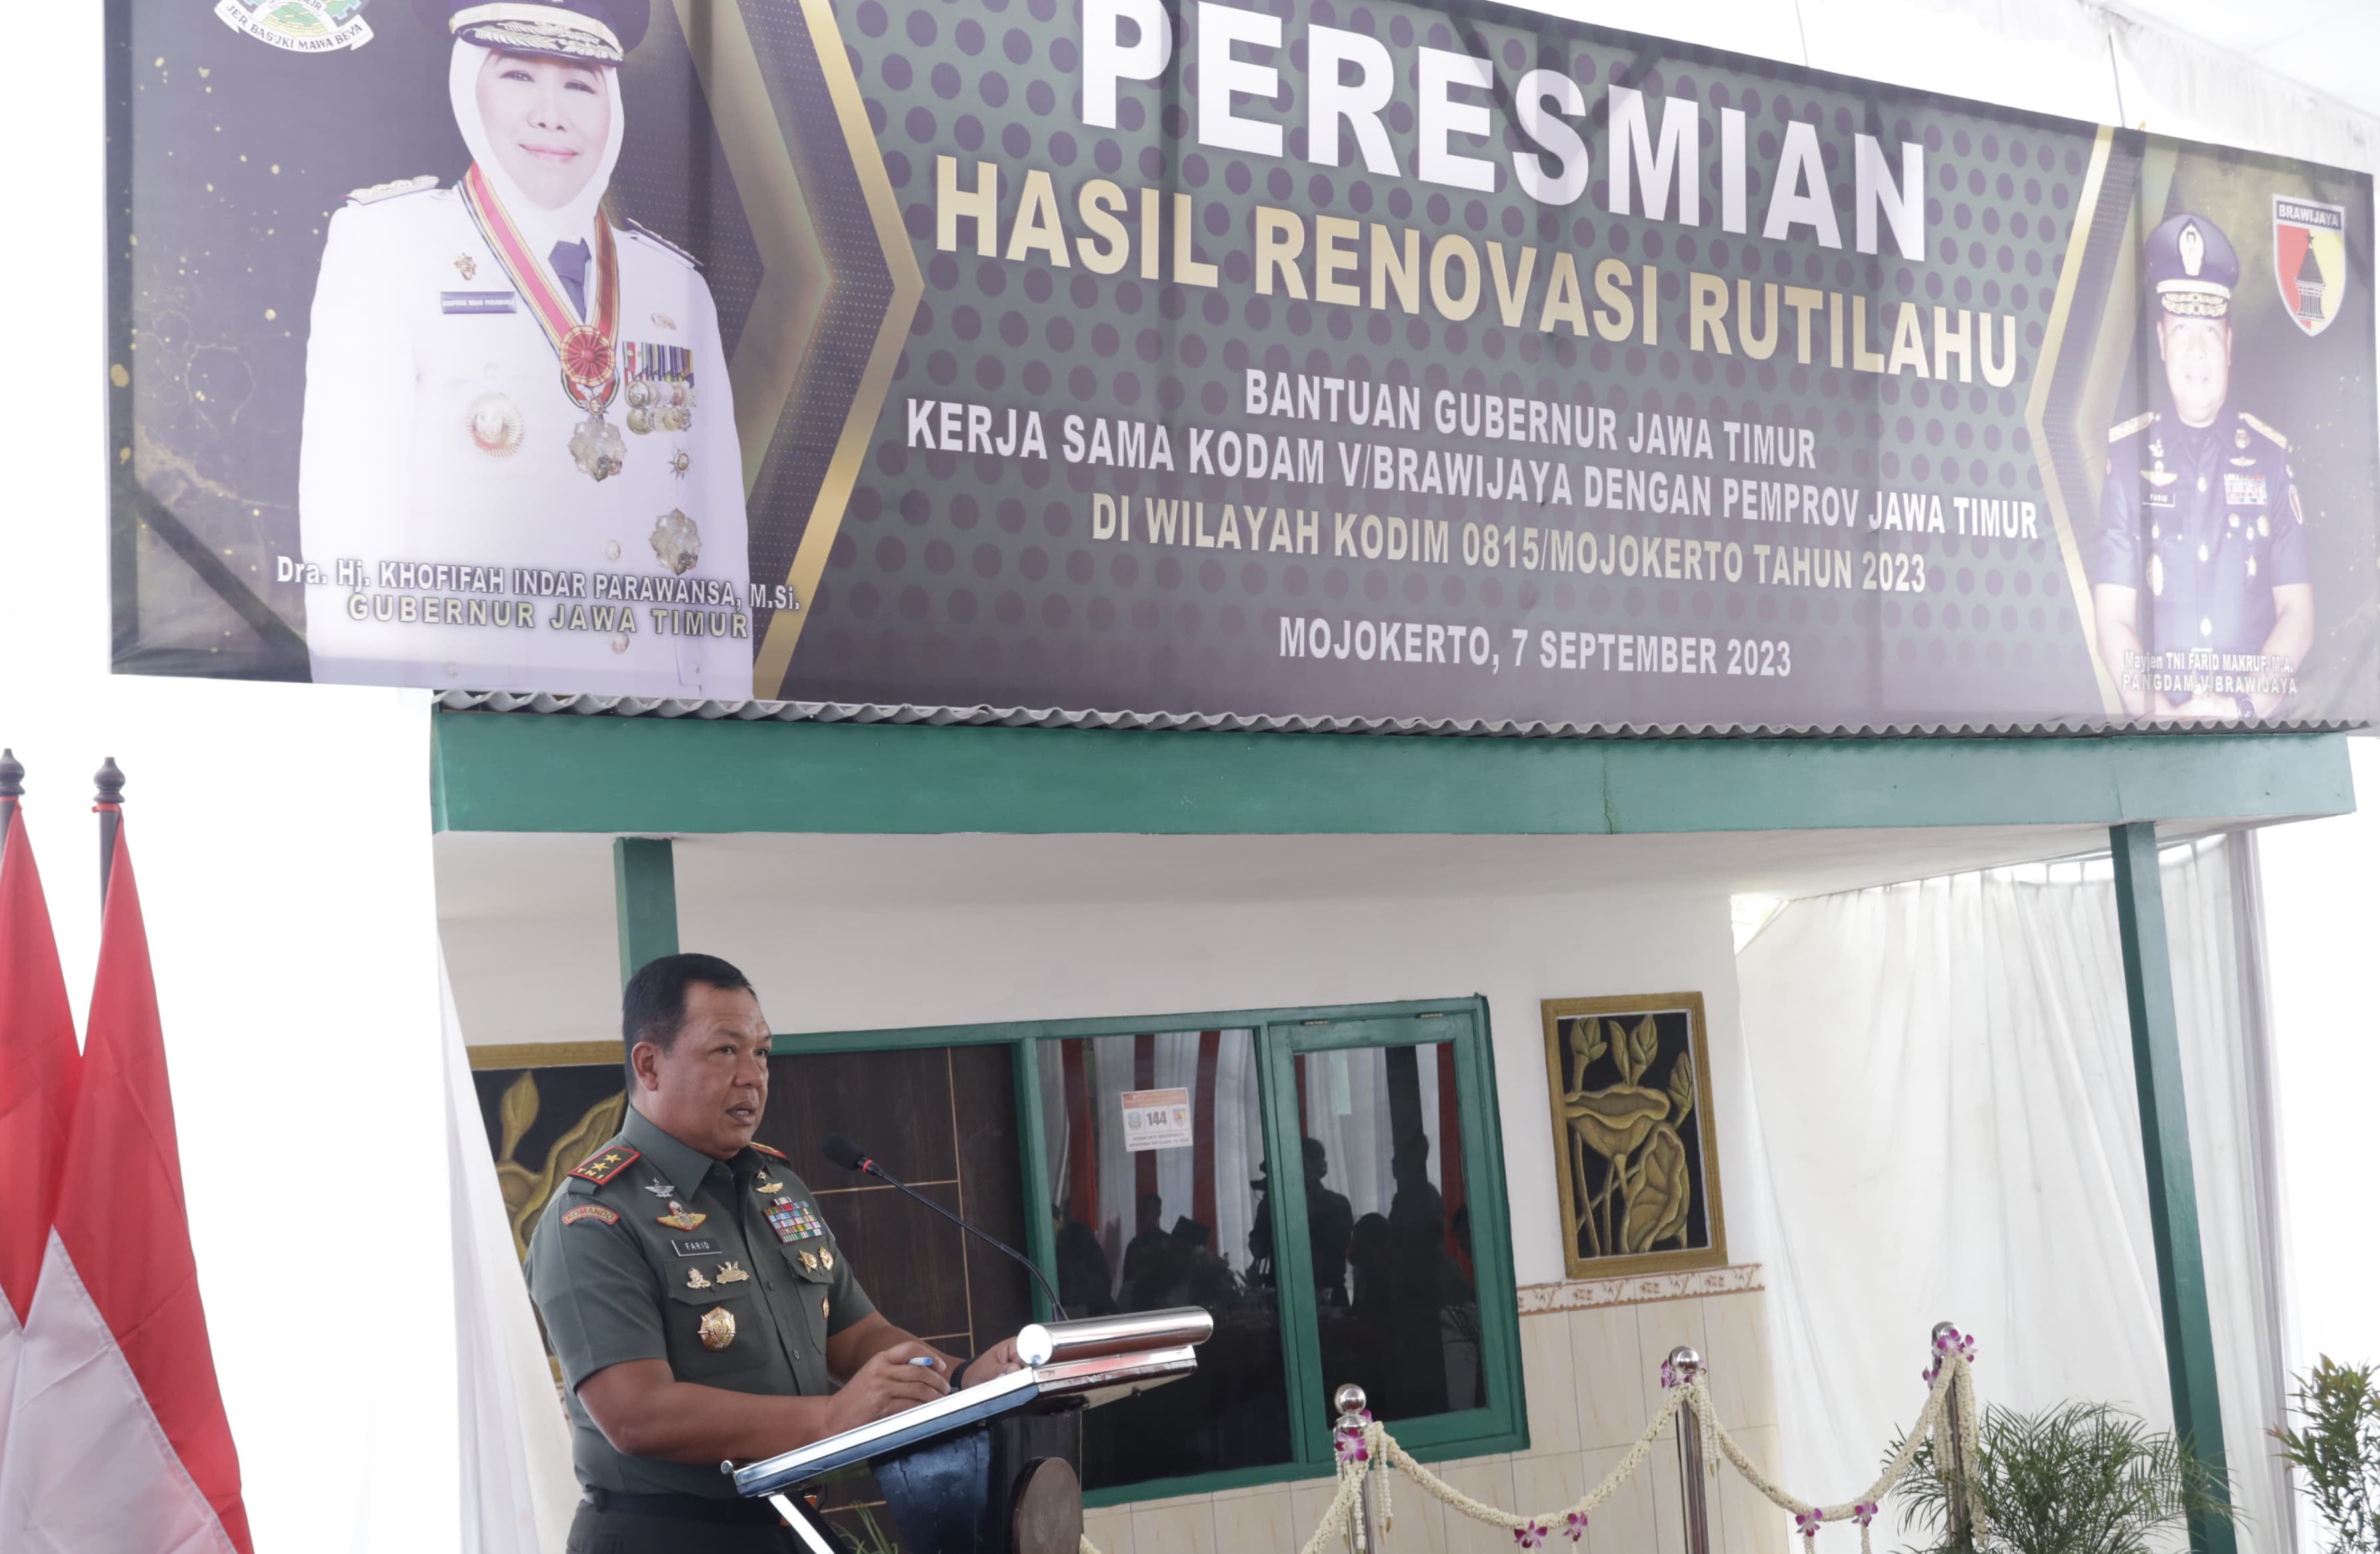 Tuntaskan 1650 Unit Rutilahu, Prajurit Kodam Diapresiasi Pandam V Brawijaya Mayjen TNI Farid Makruf